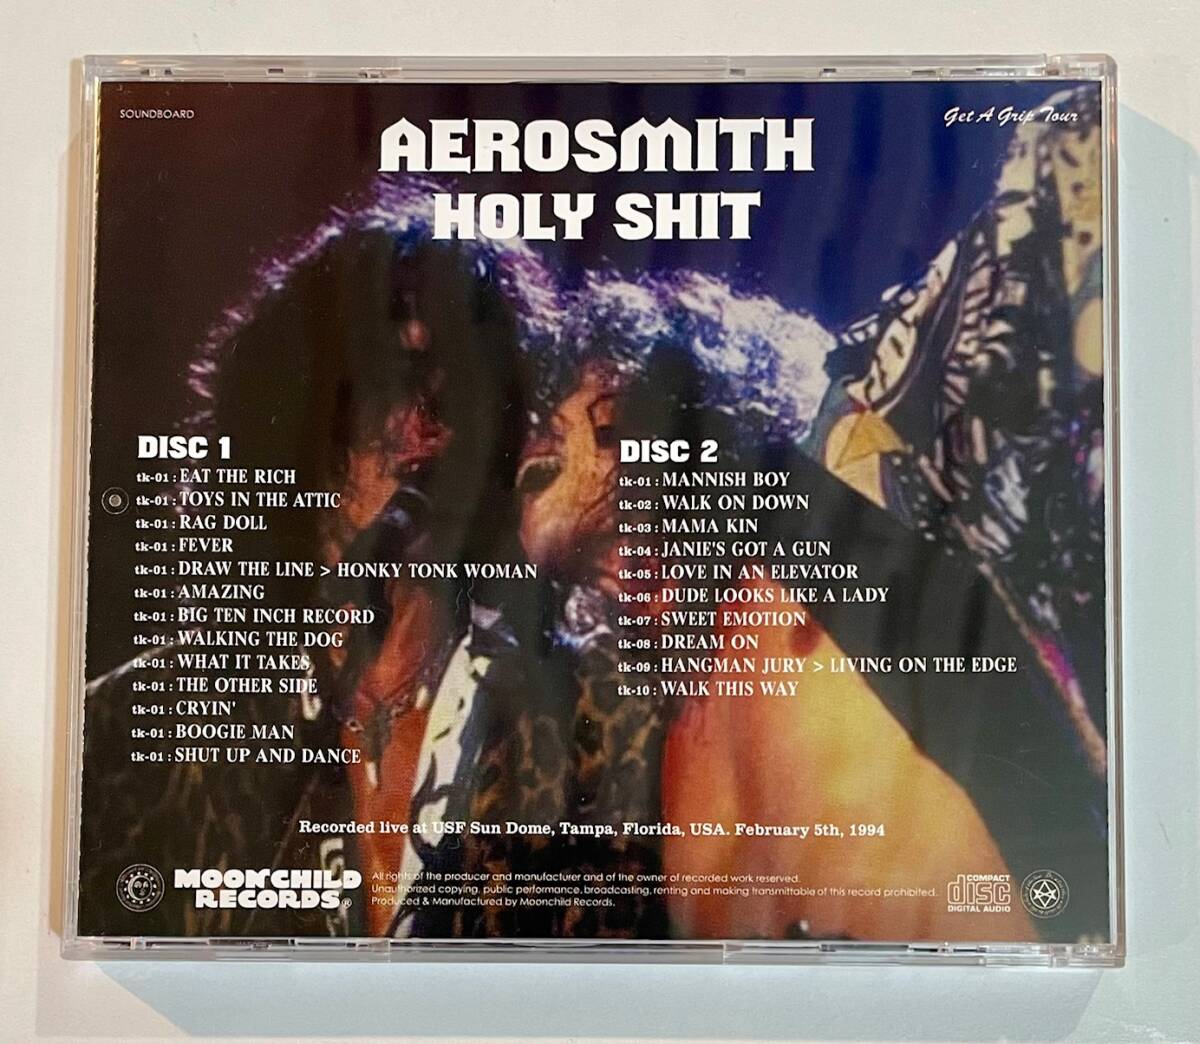 [プレス2CD] Aerosmith Holy Shit: Get A Grip Tour 2-5-1994 [MOONCHILD RECORDS] エアロスミスの画像2